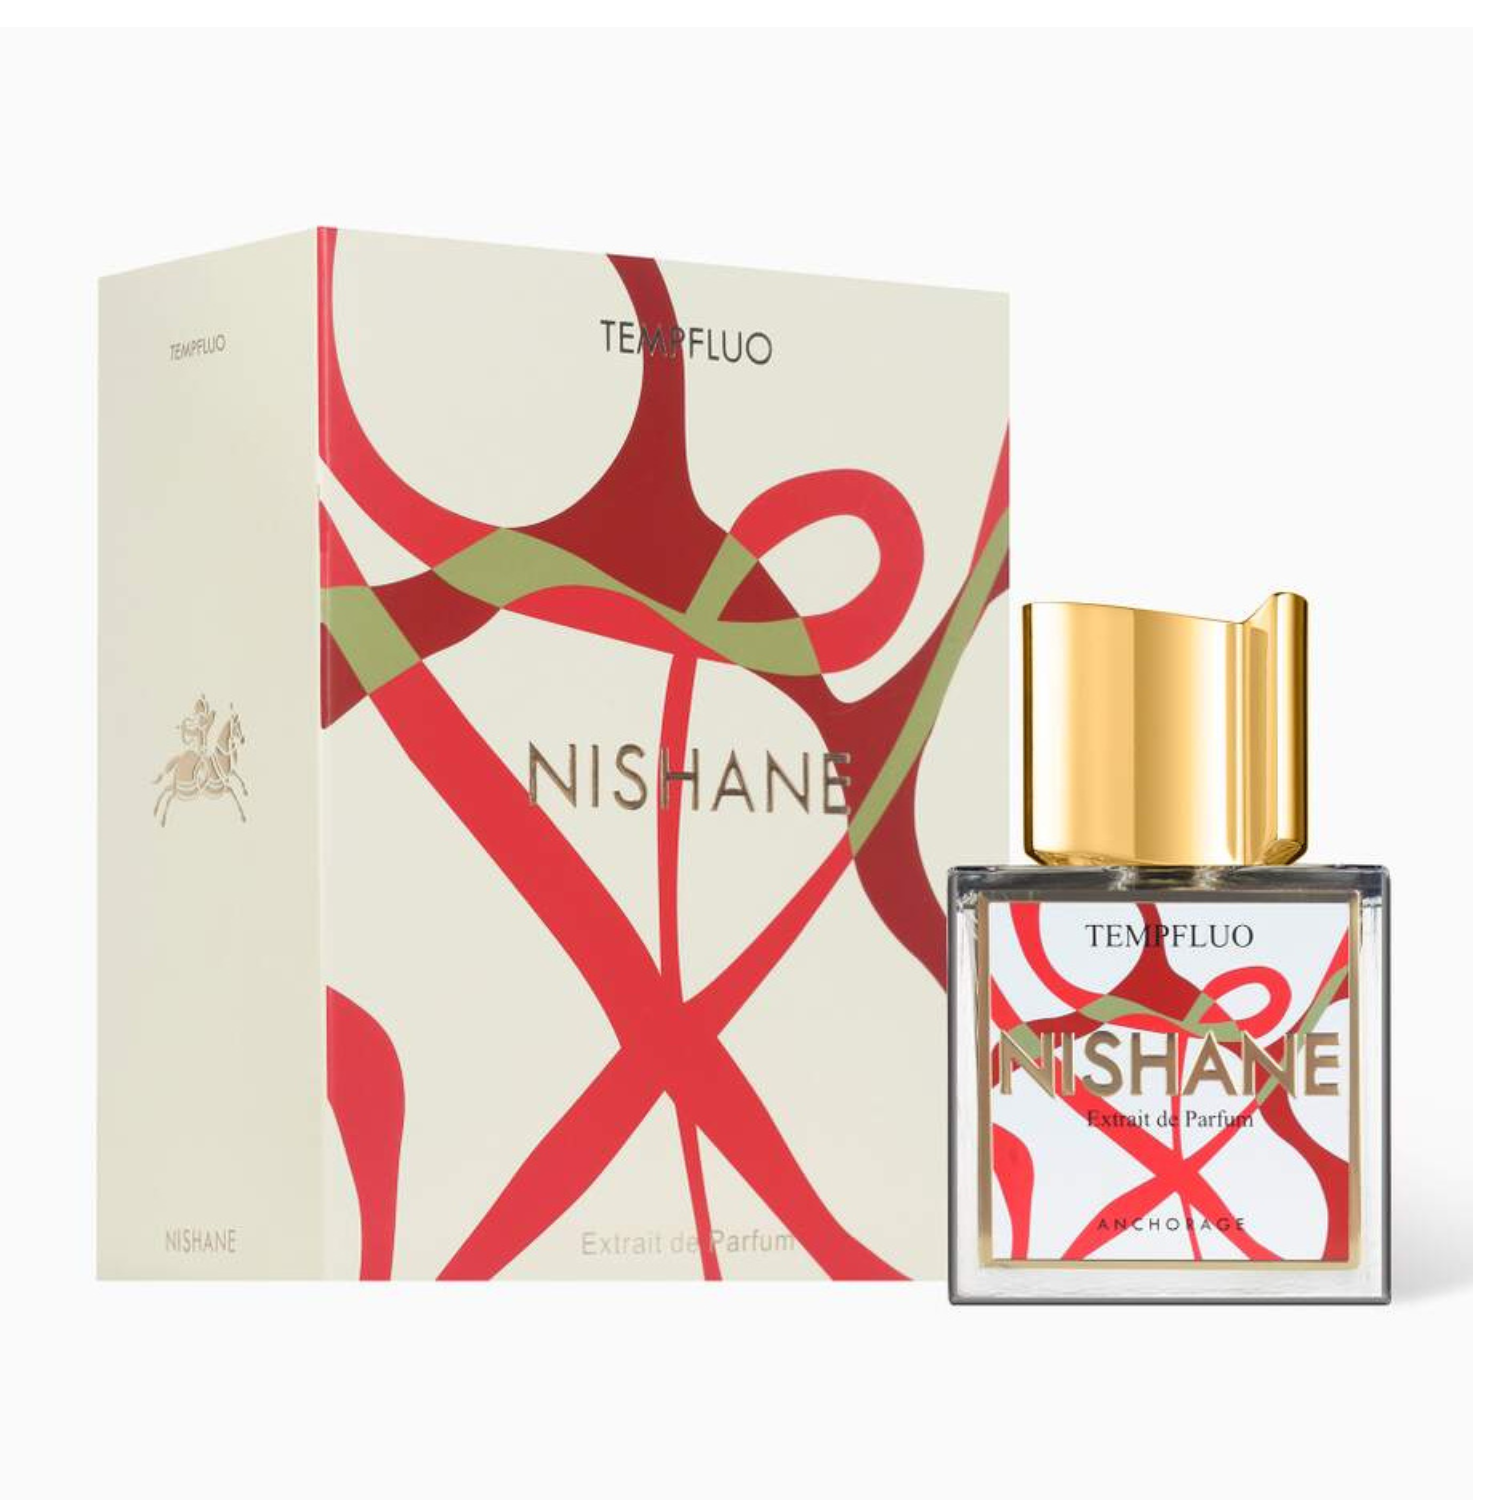 Nishane Tempfluo Extrait de Parfum